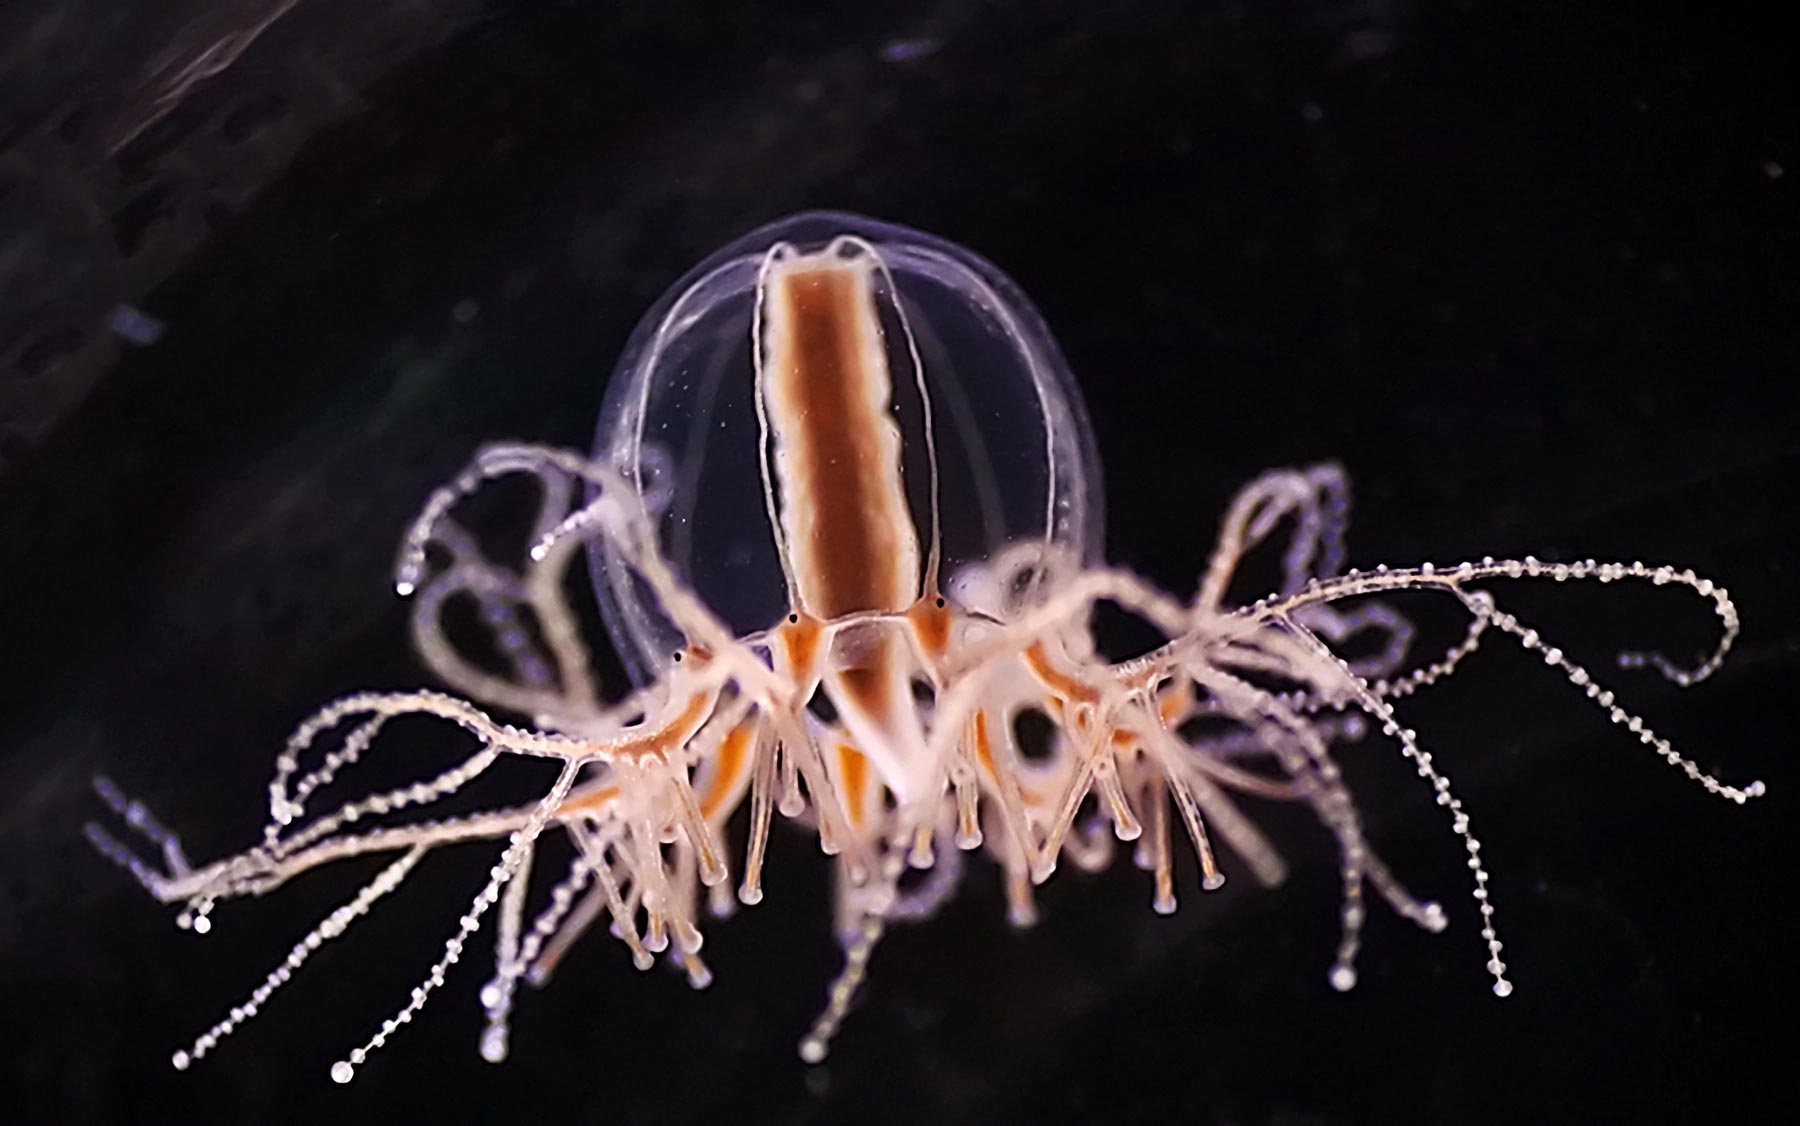 Medúzy a ovocné mušky odhalují prastaré kořeny regulace hladu